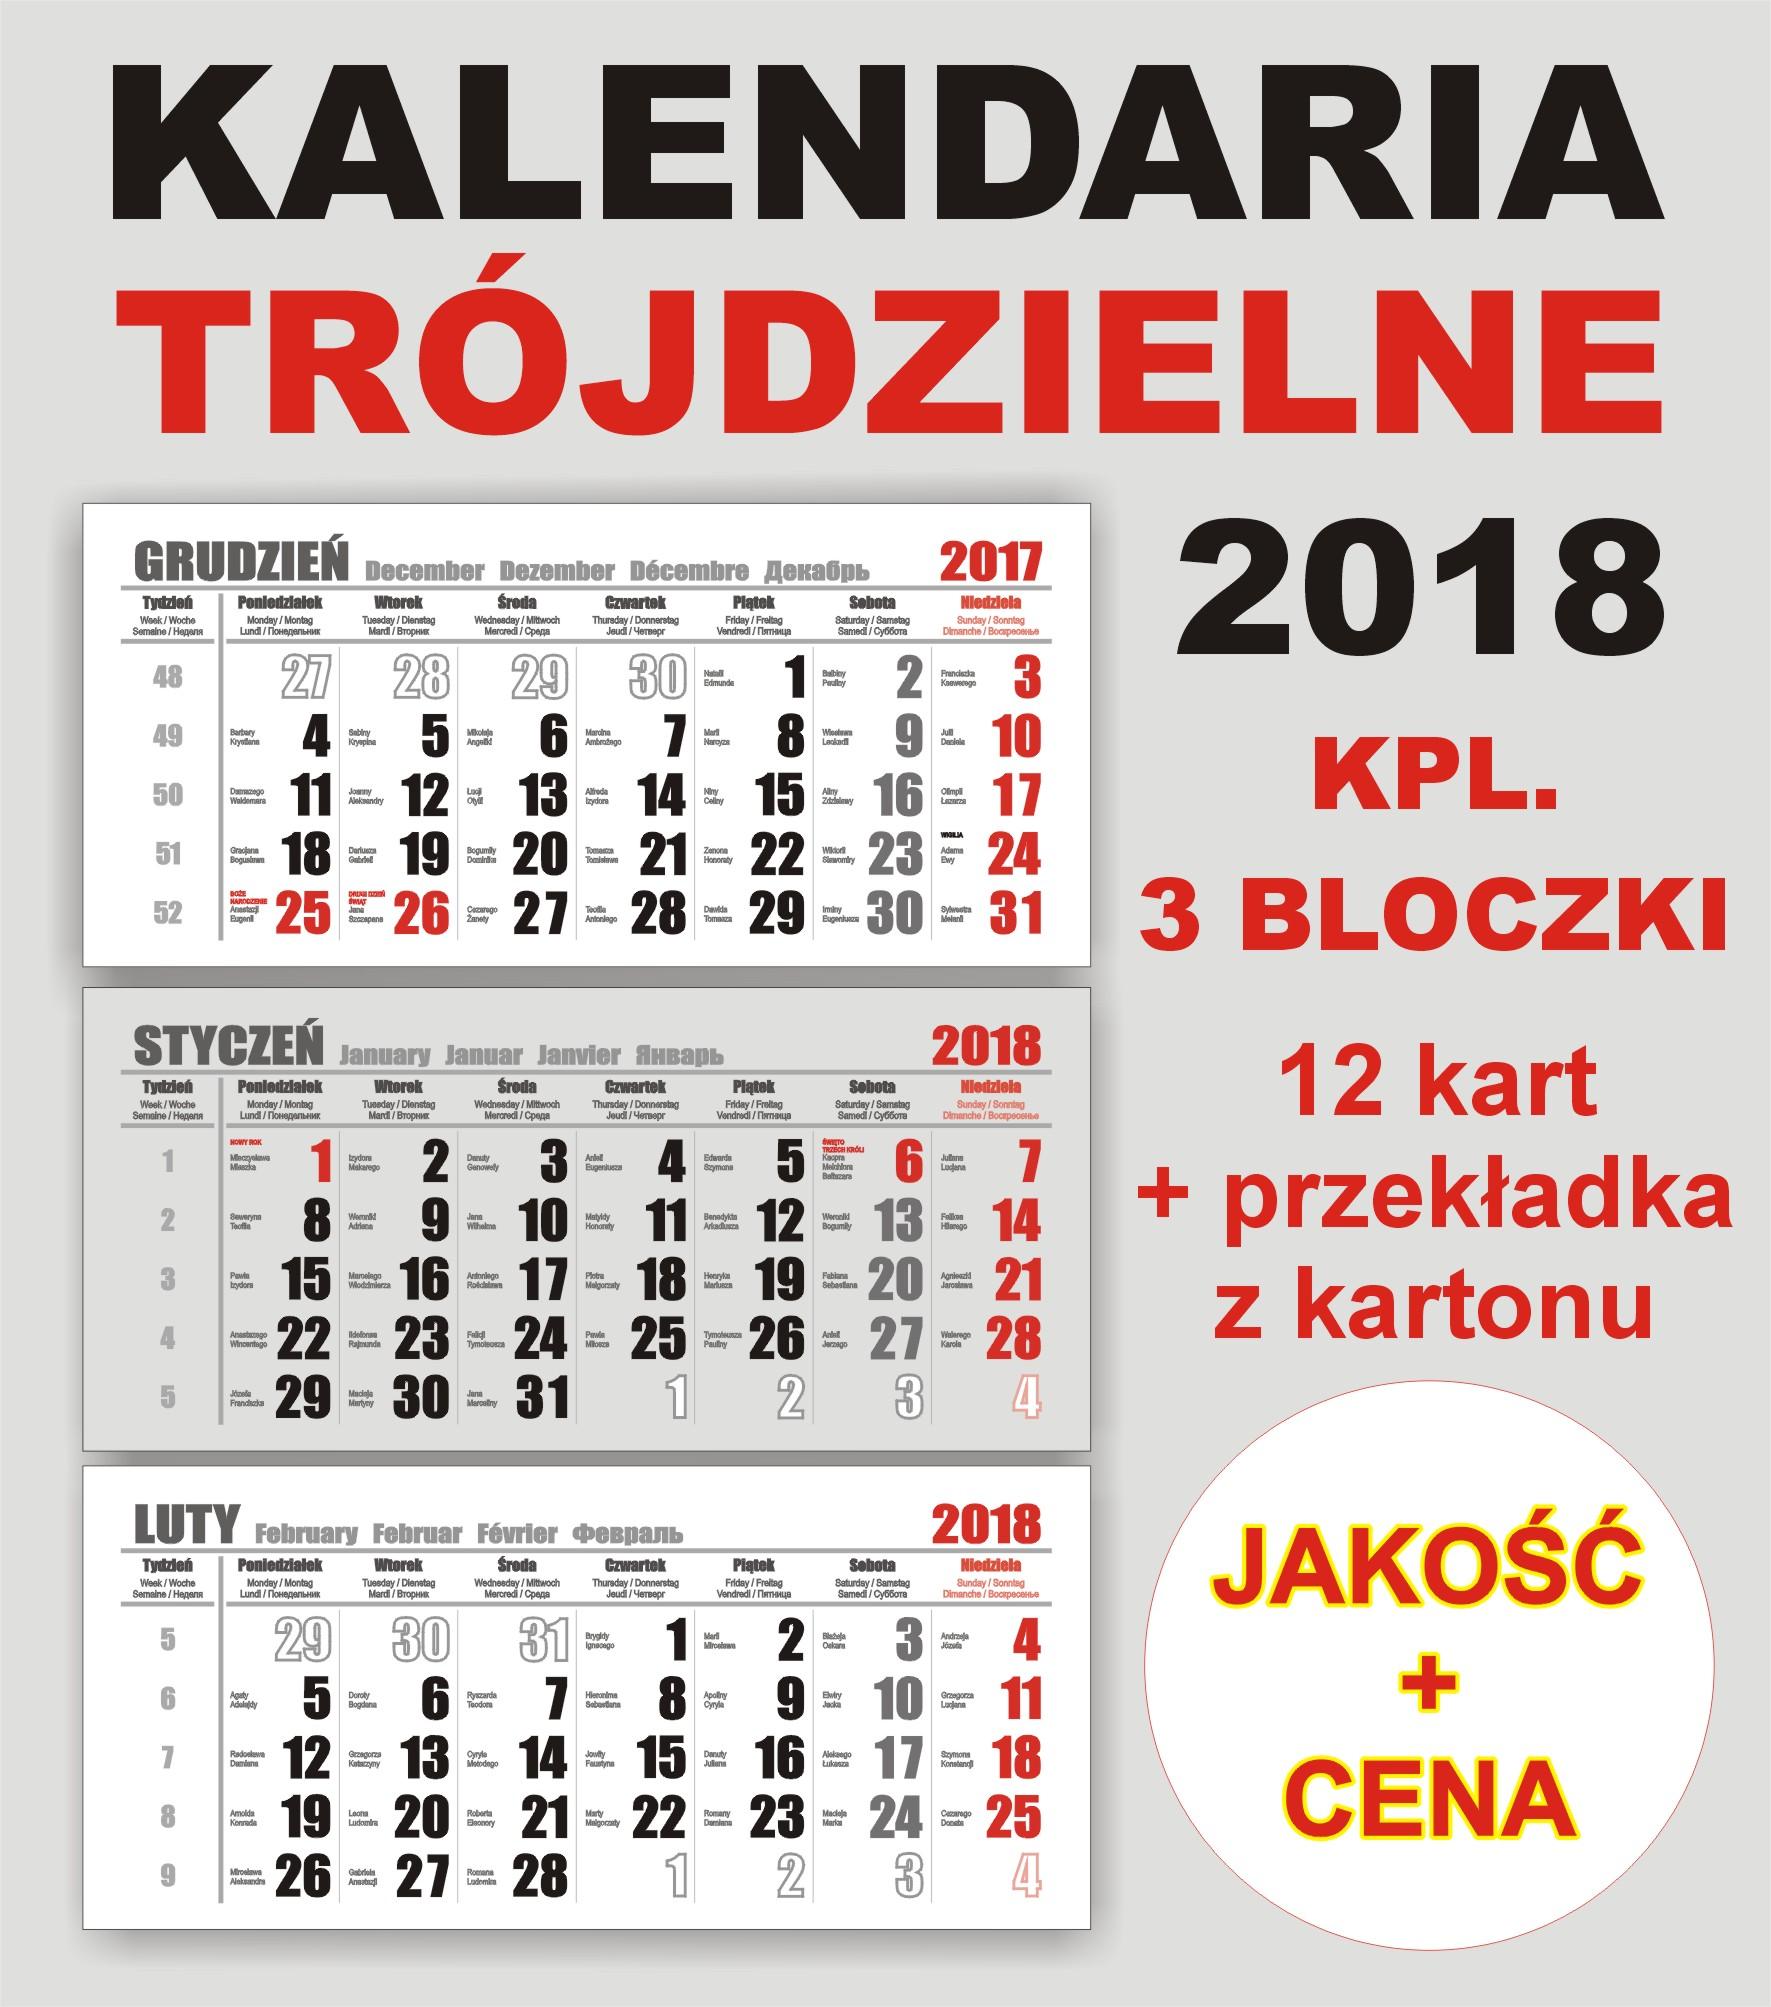 Kalendaria trójdzielne  -  do kalendarzy trójdzielnych na rok 2018